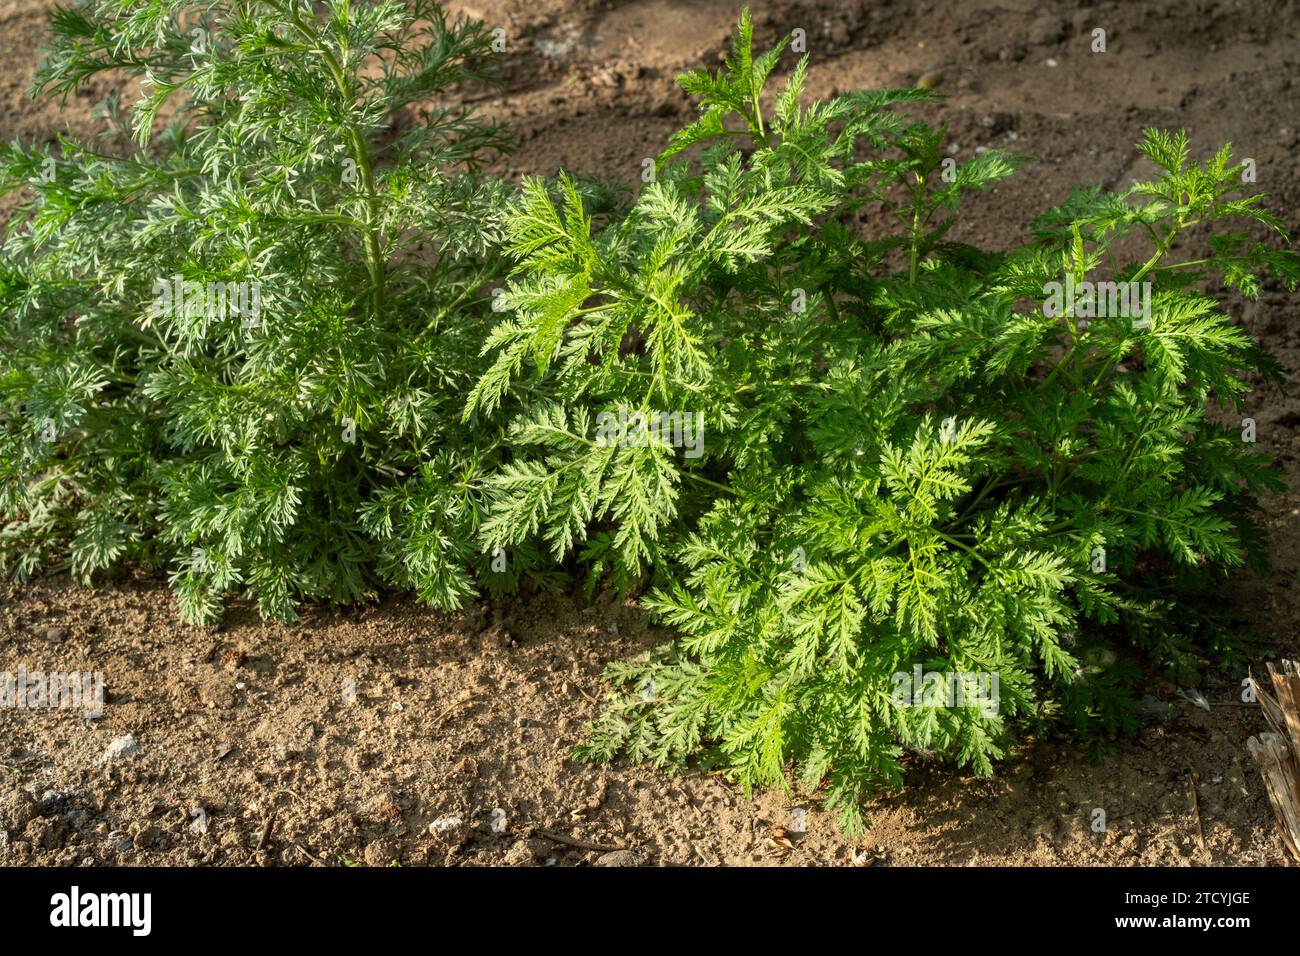 Frisch wachsende süße Wermut (Artemisia Annua, süße annie, jährliches Beifuß) Gräser auf dem wilden Feld in Peking, China. Stockfoto